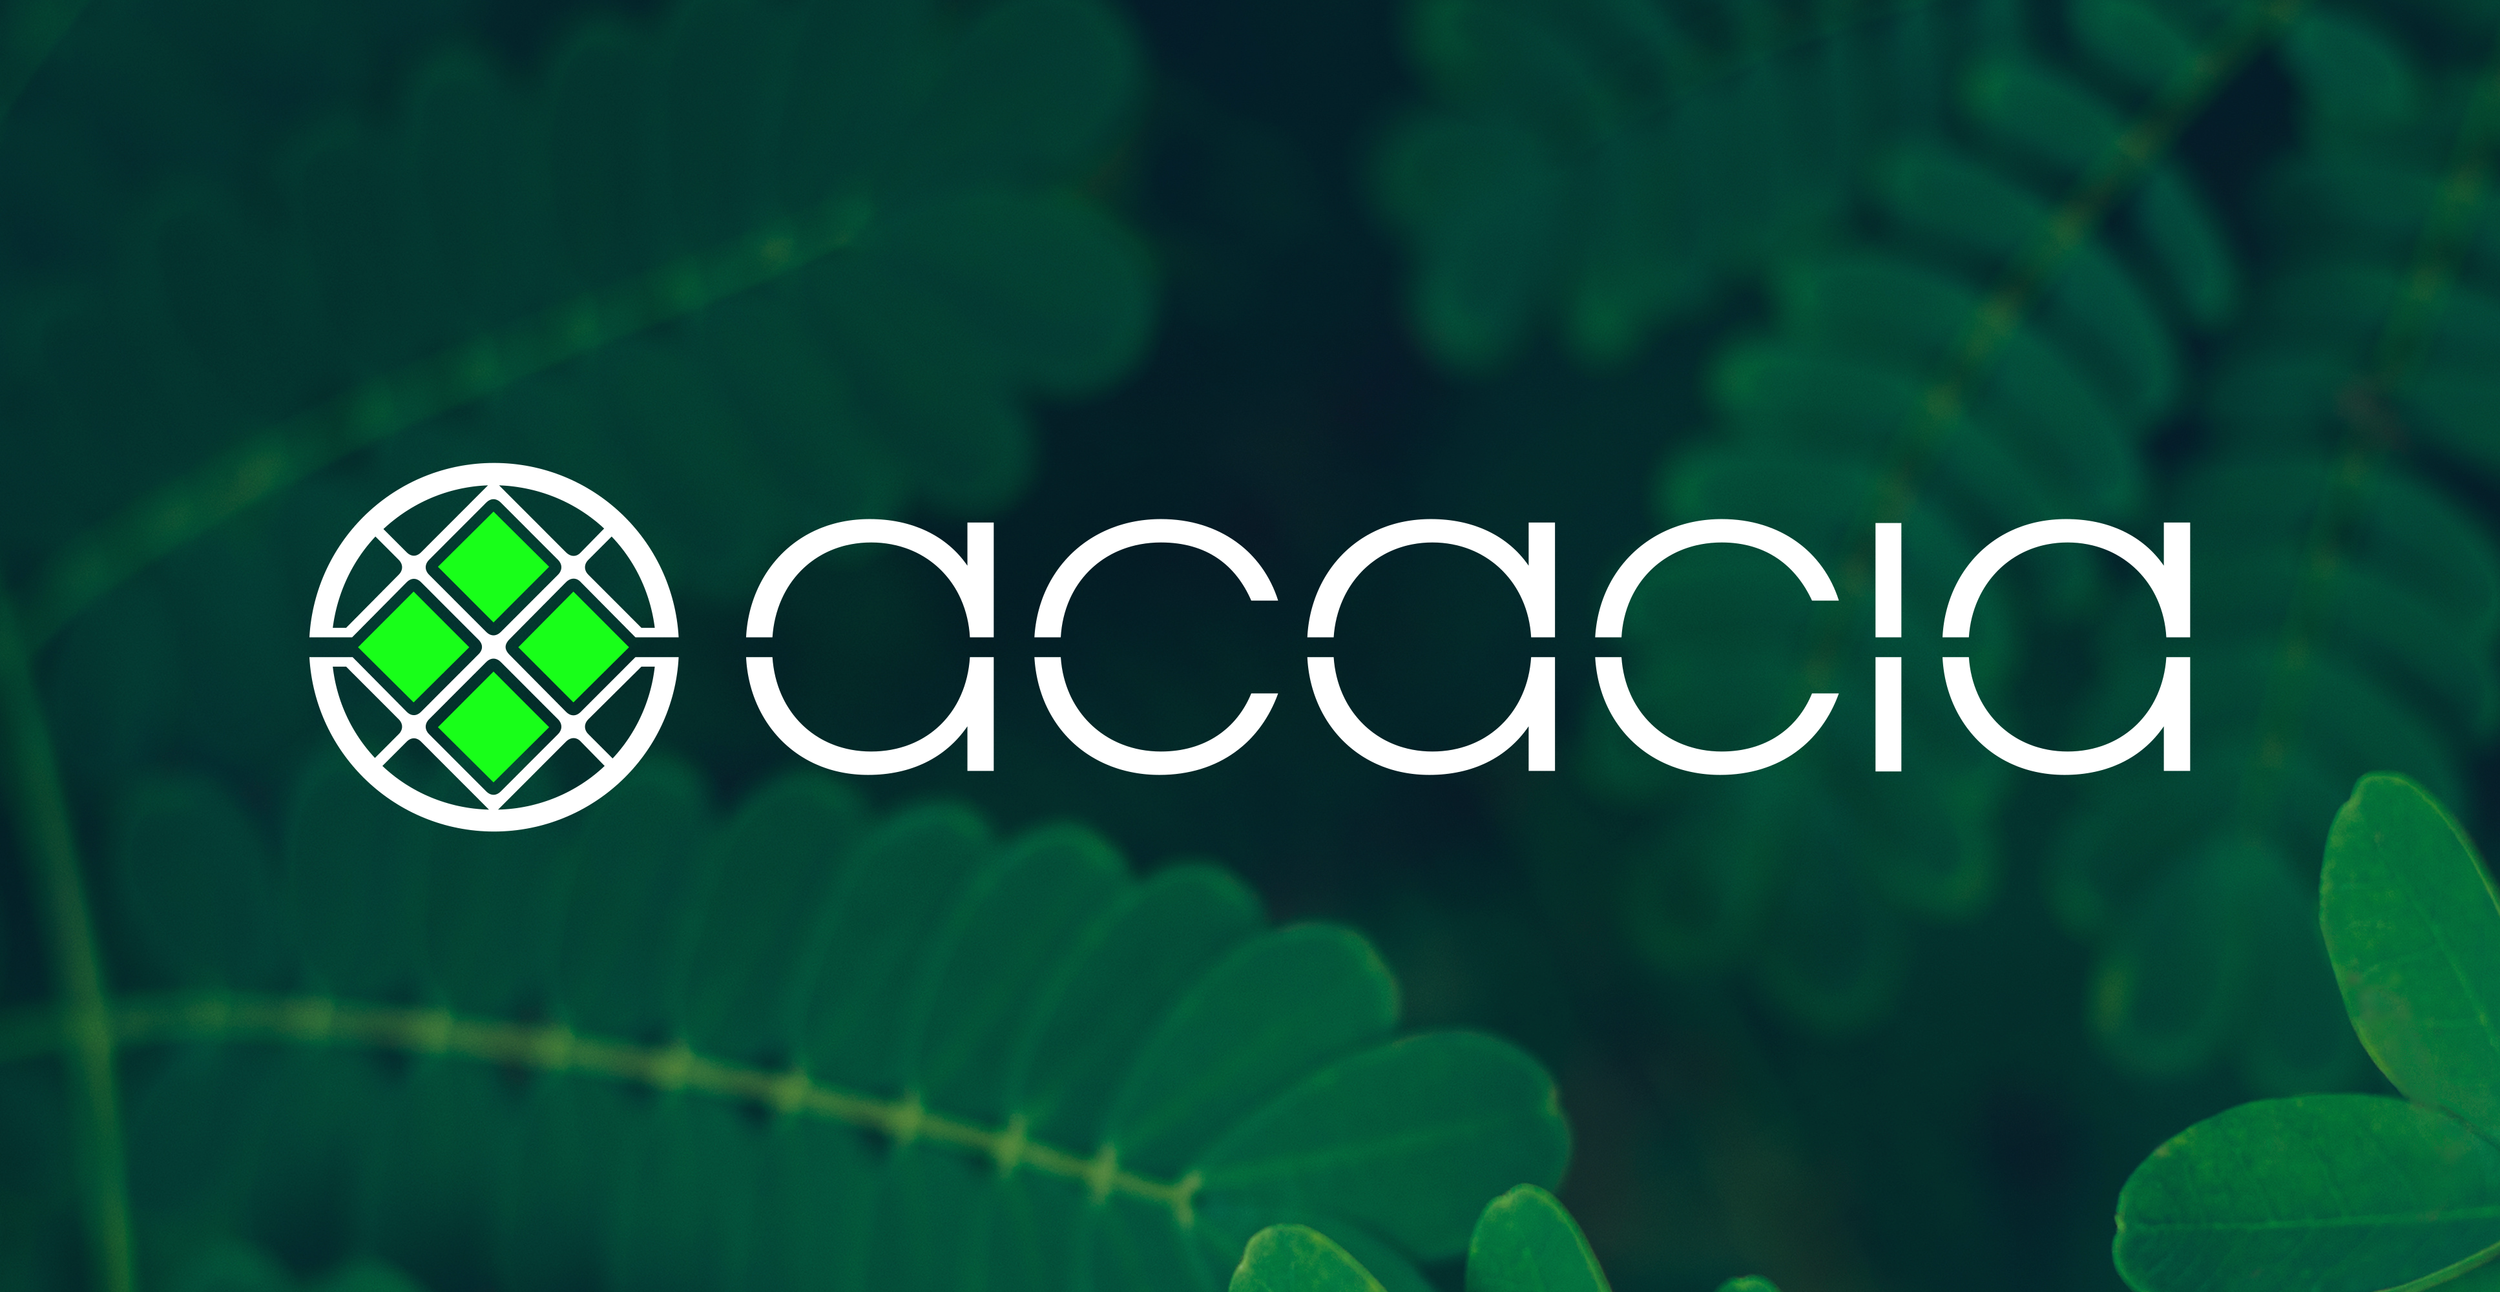 Acacia_Logo_Acacialeaves.png